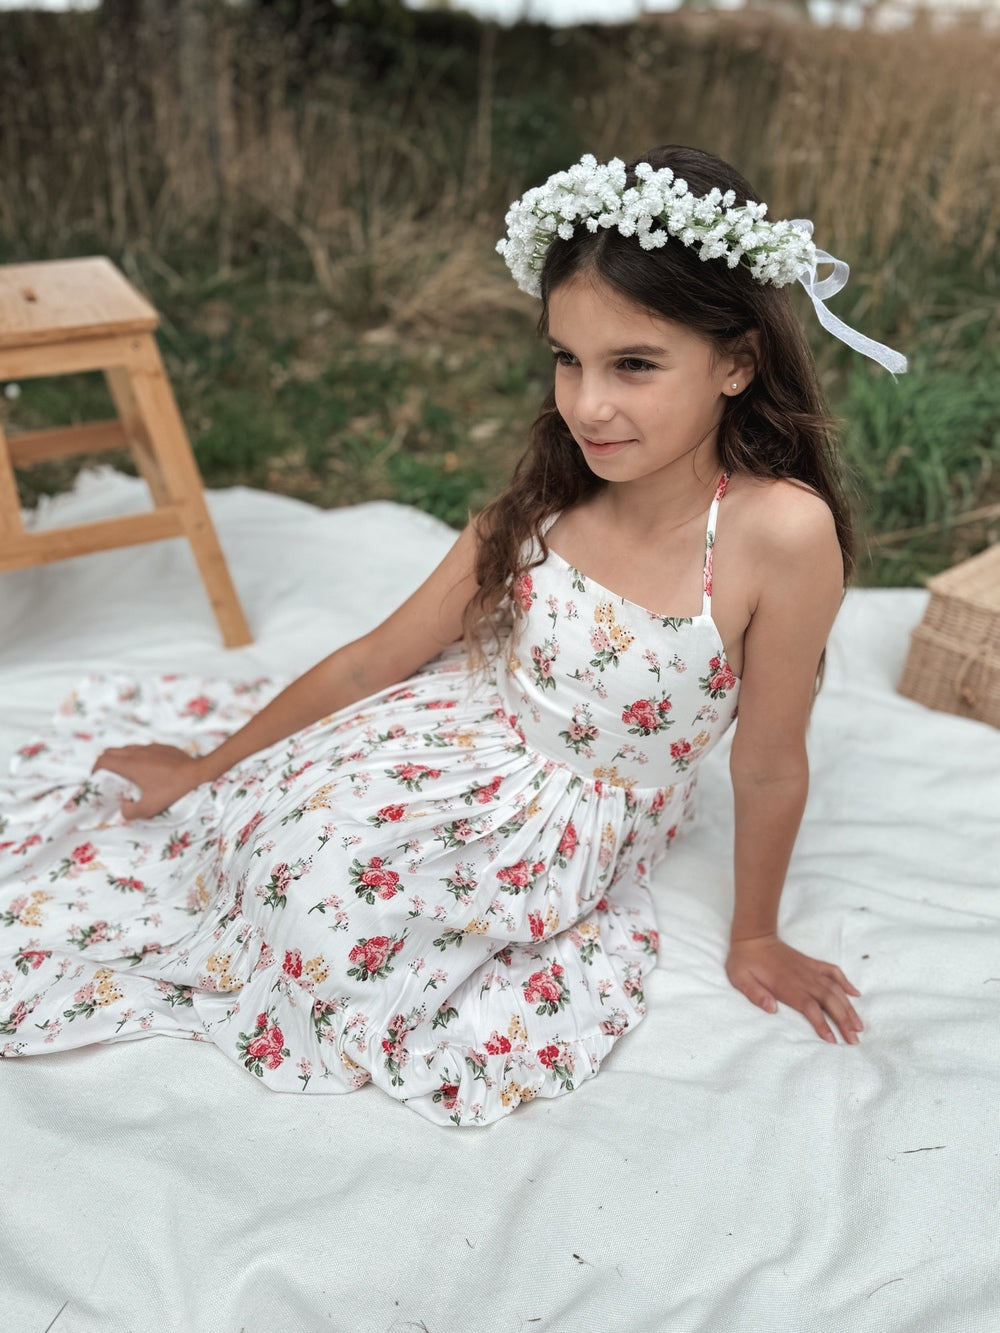 White Baby's Breath Flower Crown - Girls Boho Dresses